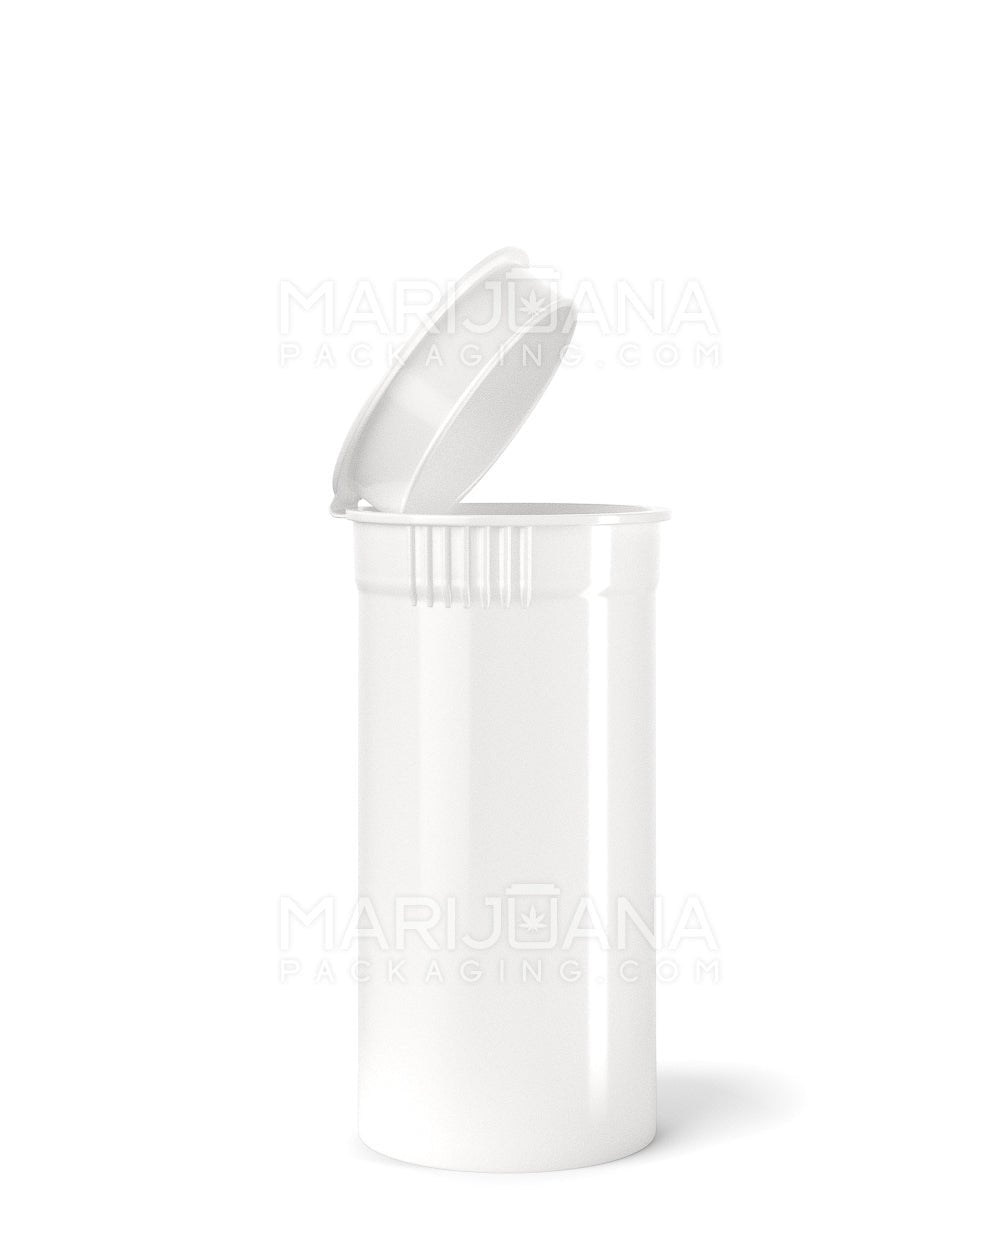 POLLEN GEAR | Child Resistant KSC Opaque White Pop Top Bottles | 13dr - 2g - 592 Count - 1